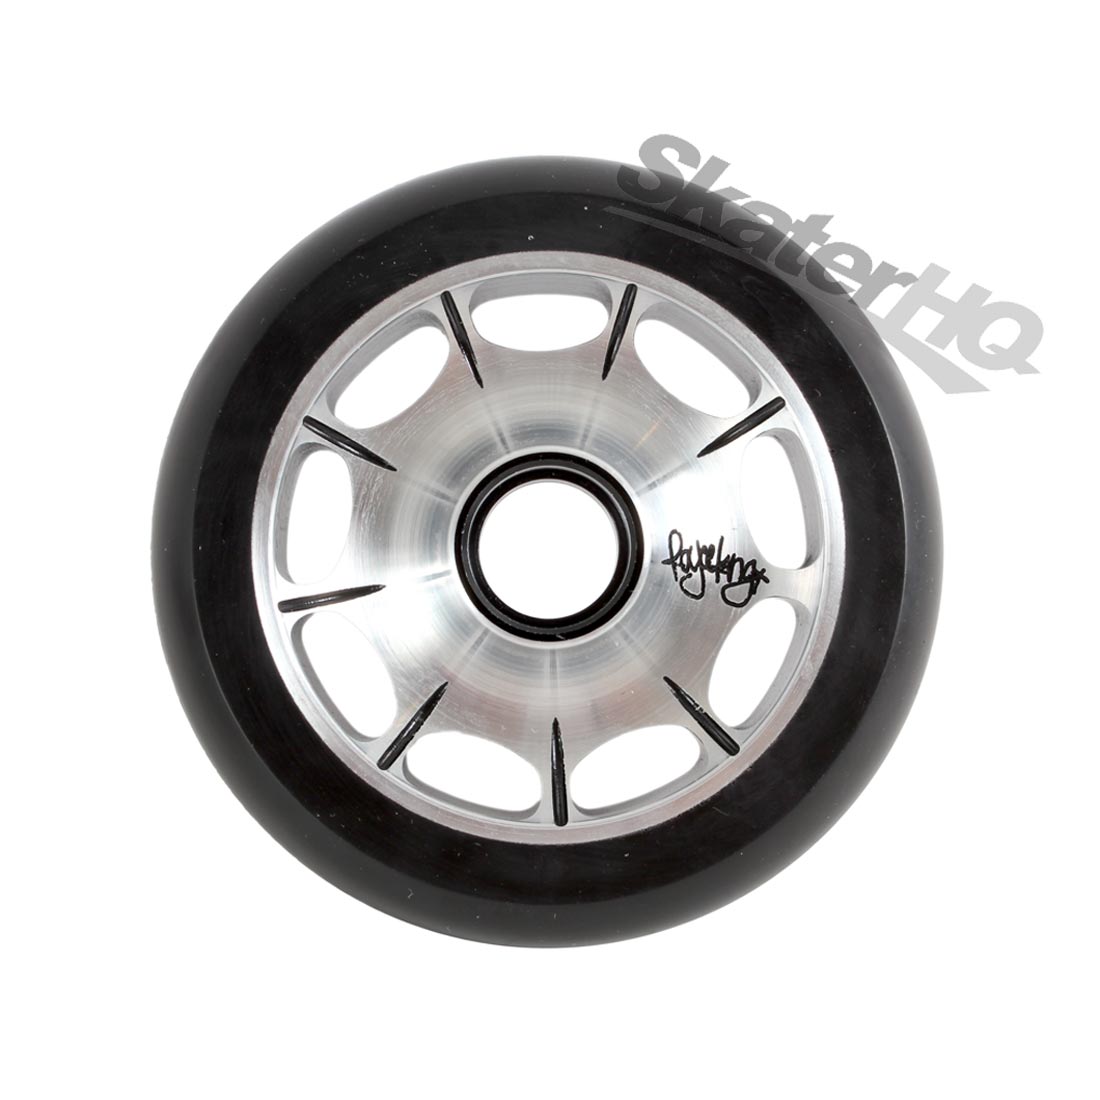 Root Industries Royce King Sig Wheel 110mm - Black Scooter Wheels